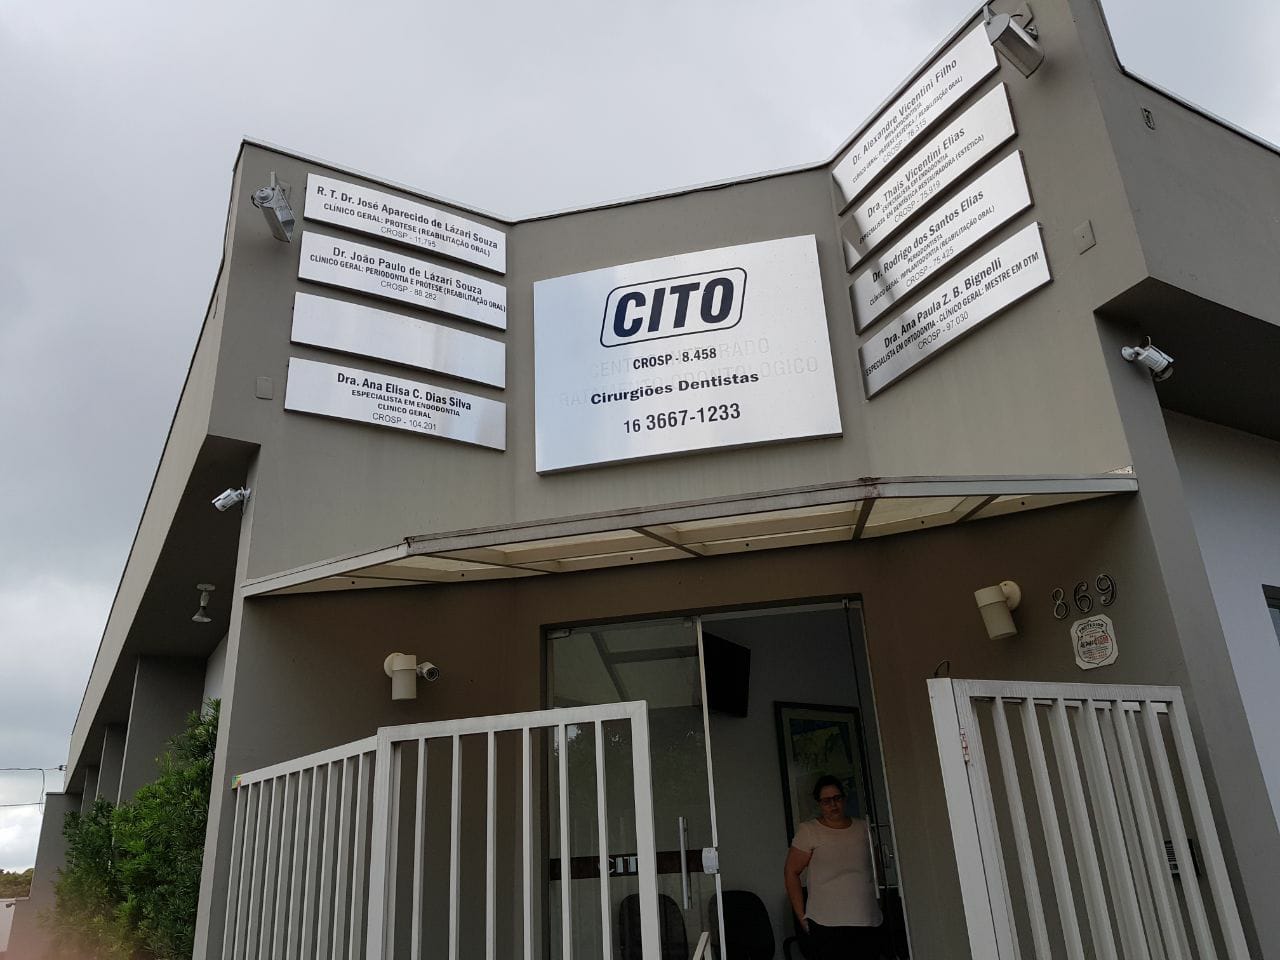 CITO Centro Integrado de Tratamento Odontológico